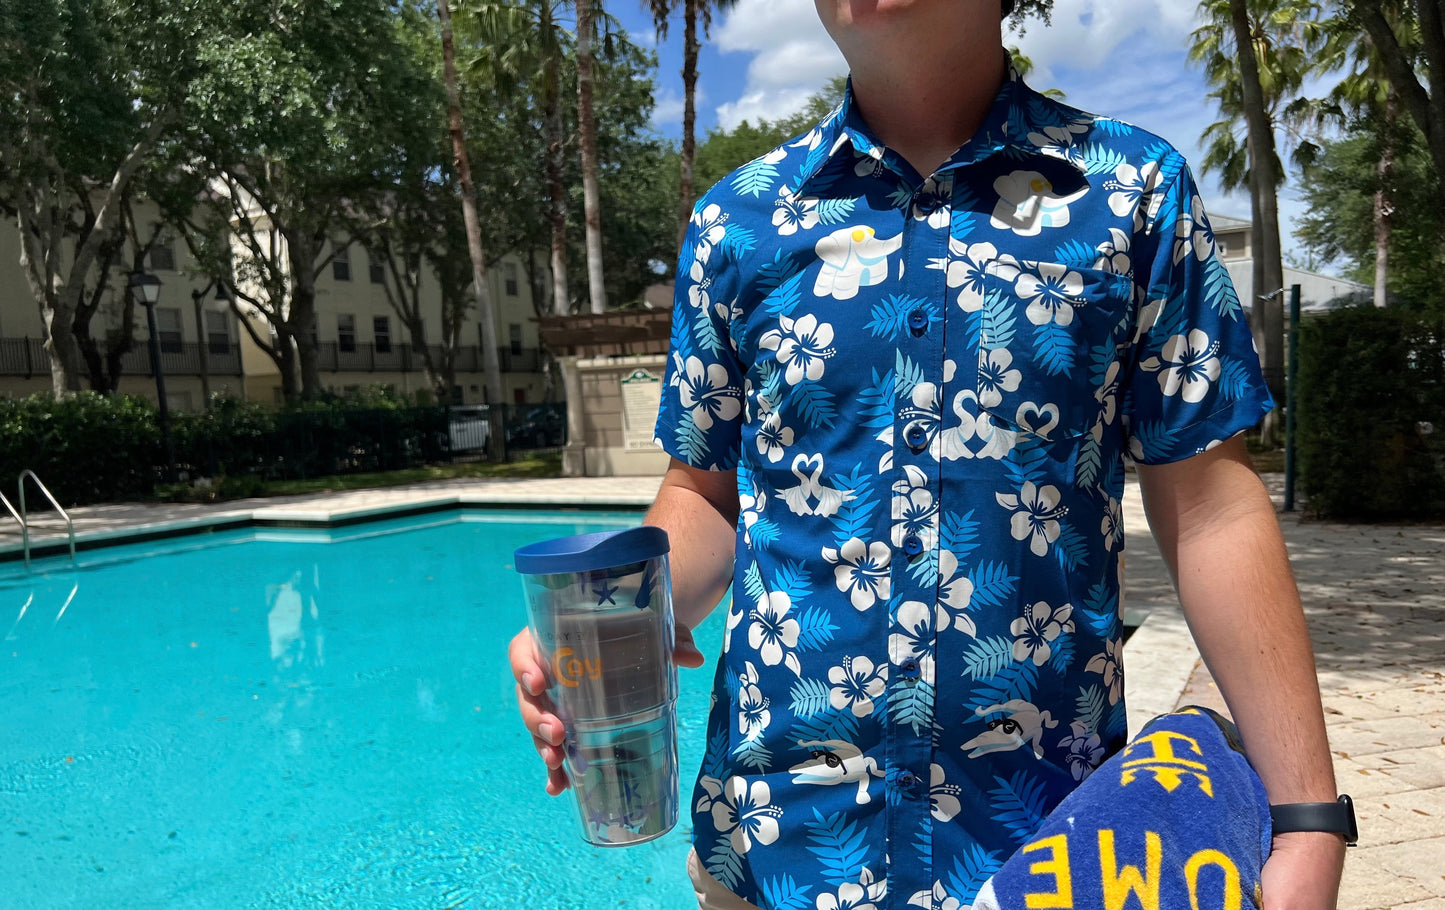 tropical hawaiian shirt